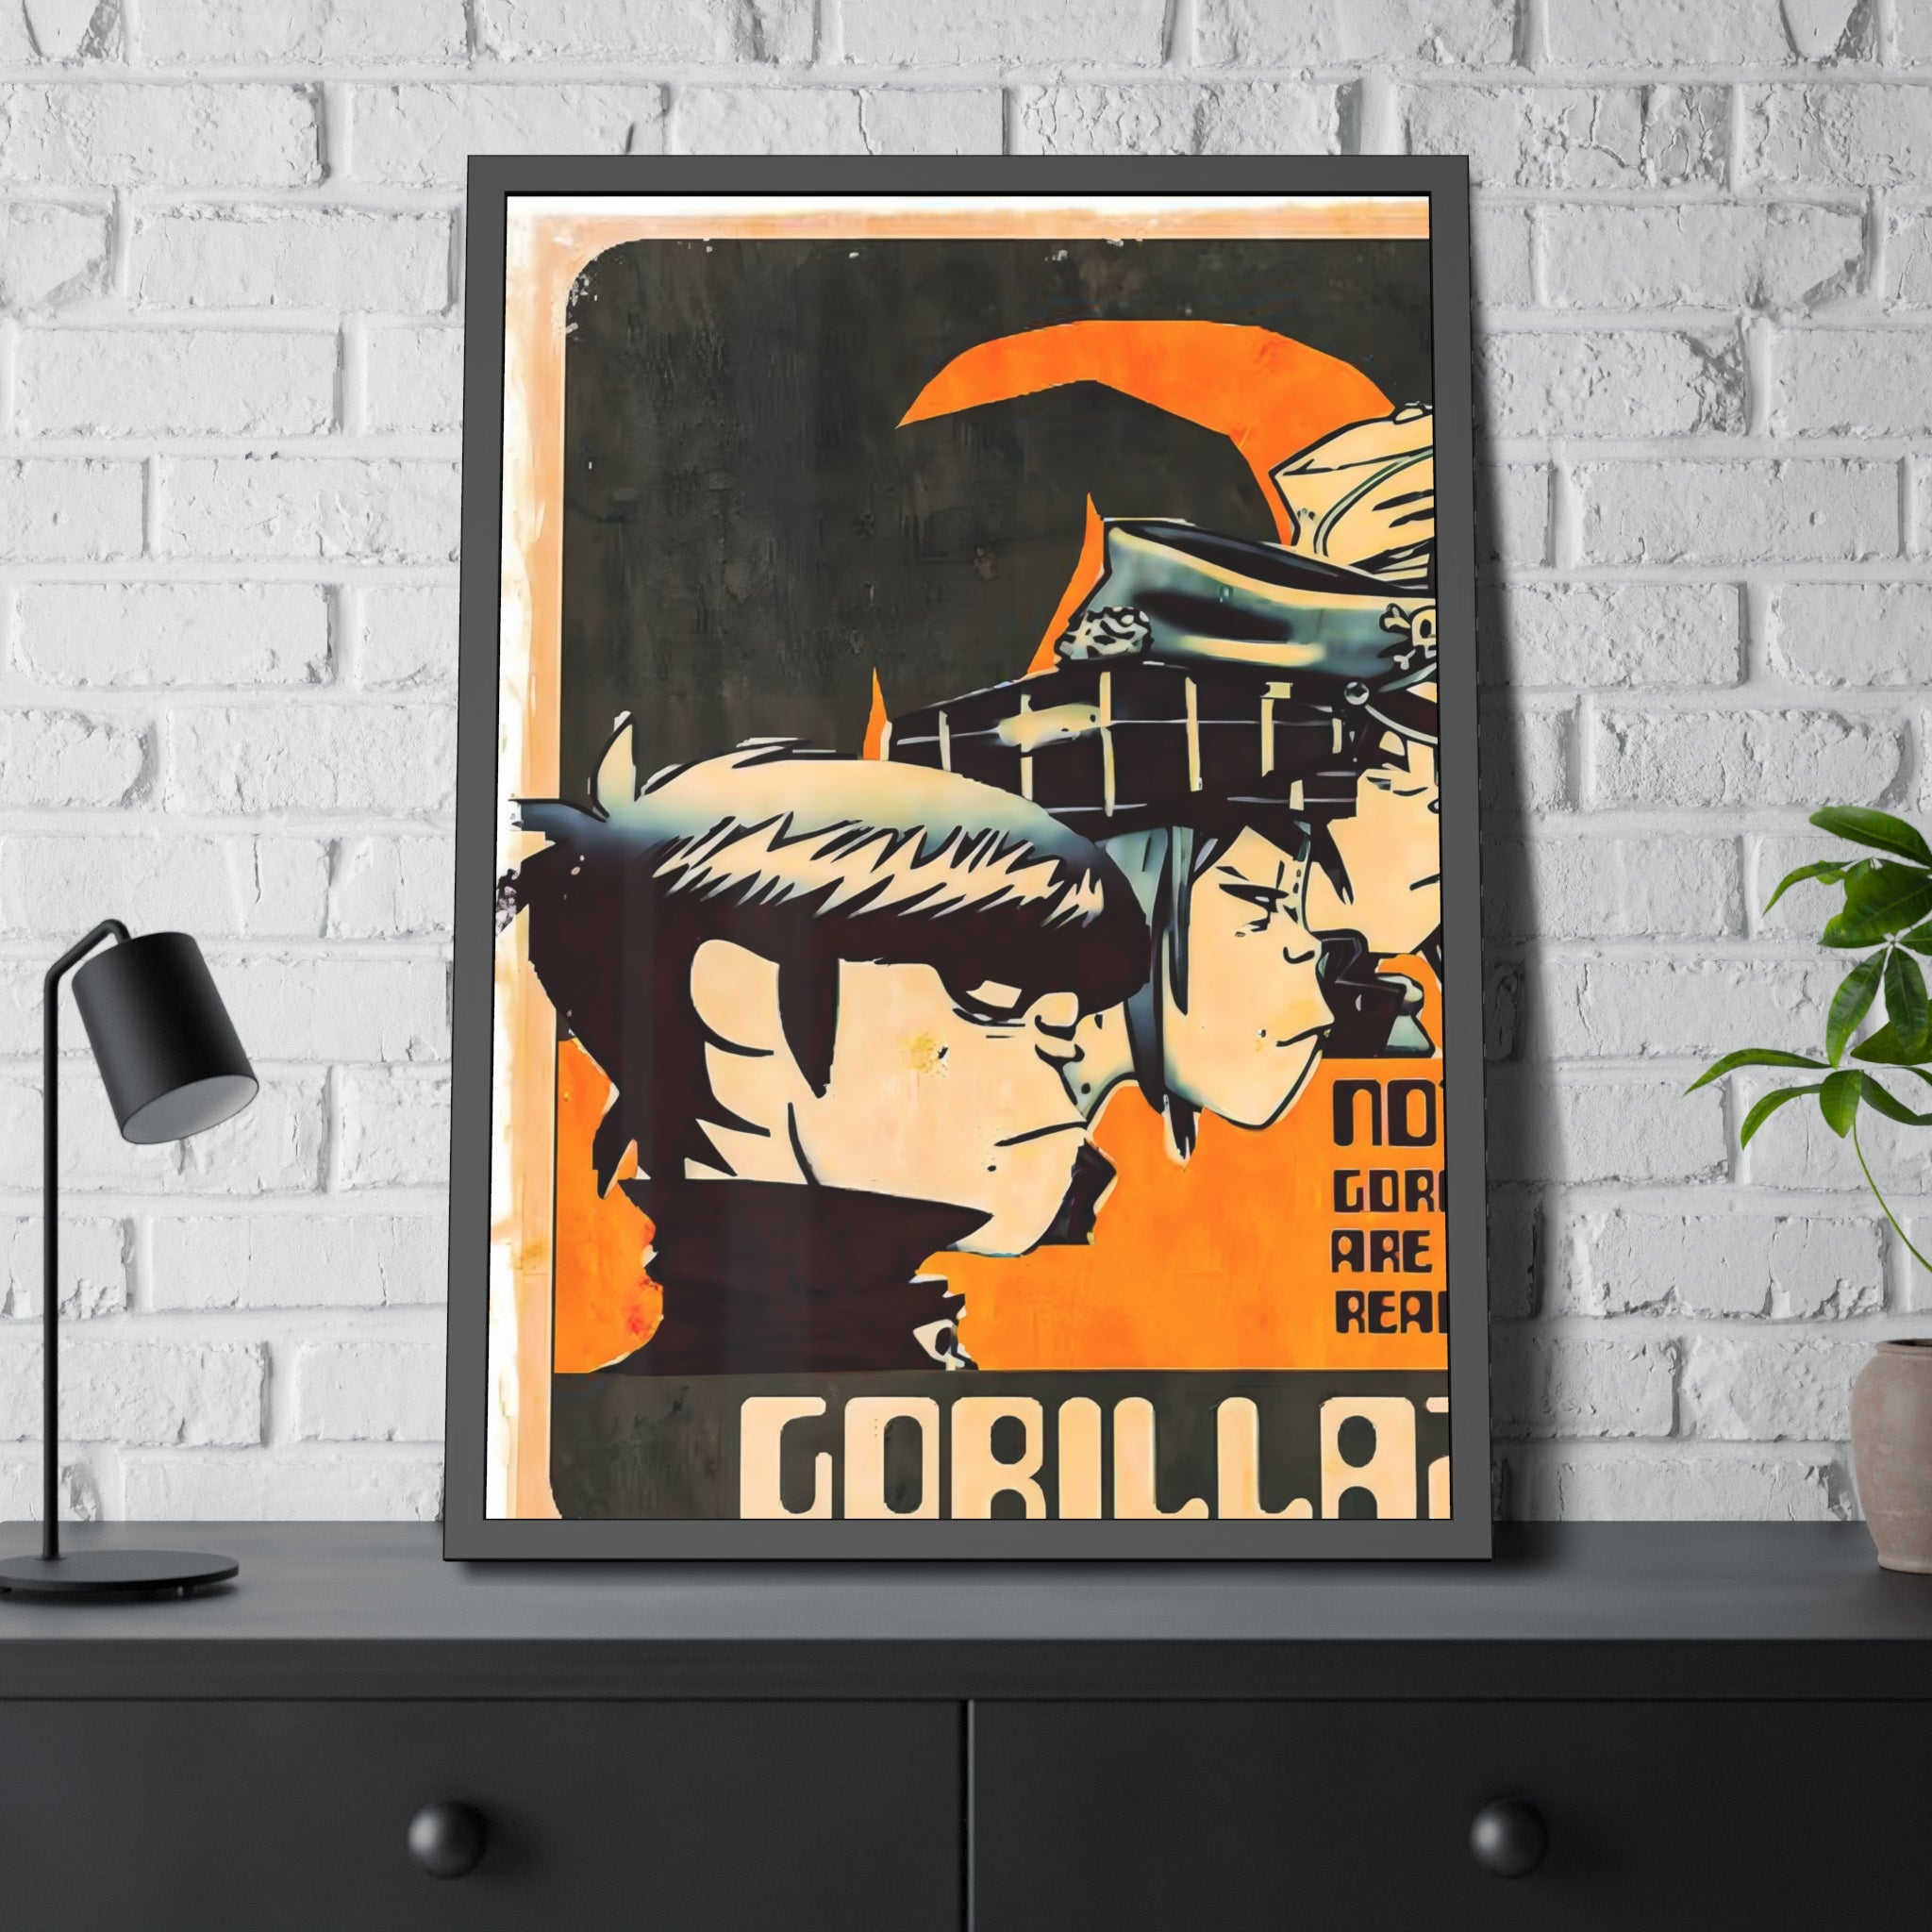 Gorillaz Concert Poster II